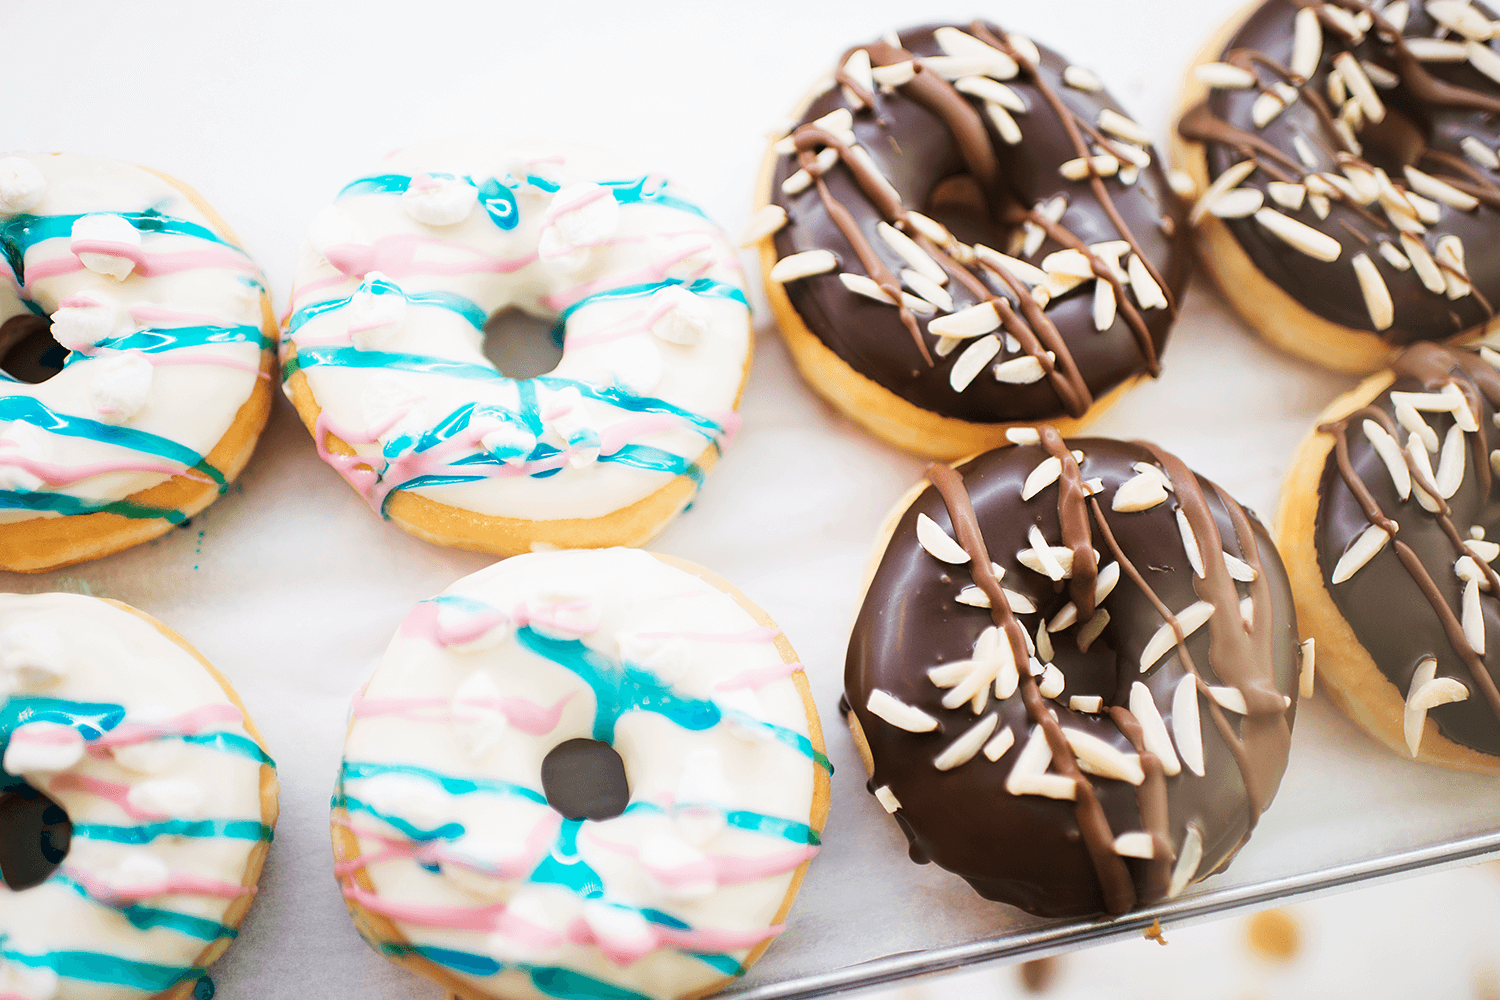 Tasty Donuts & Coffee is zoveel meer dan alleen donuts